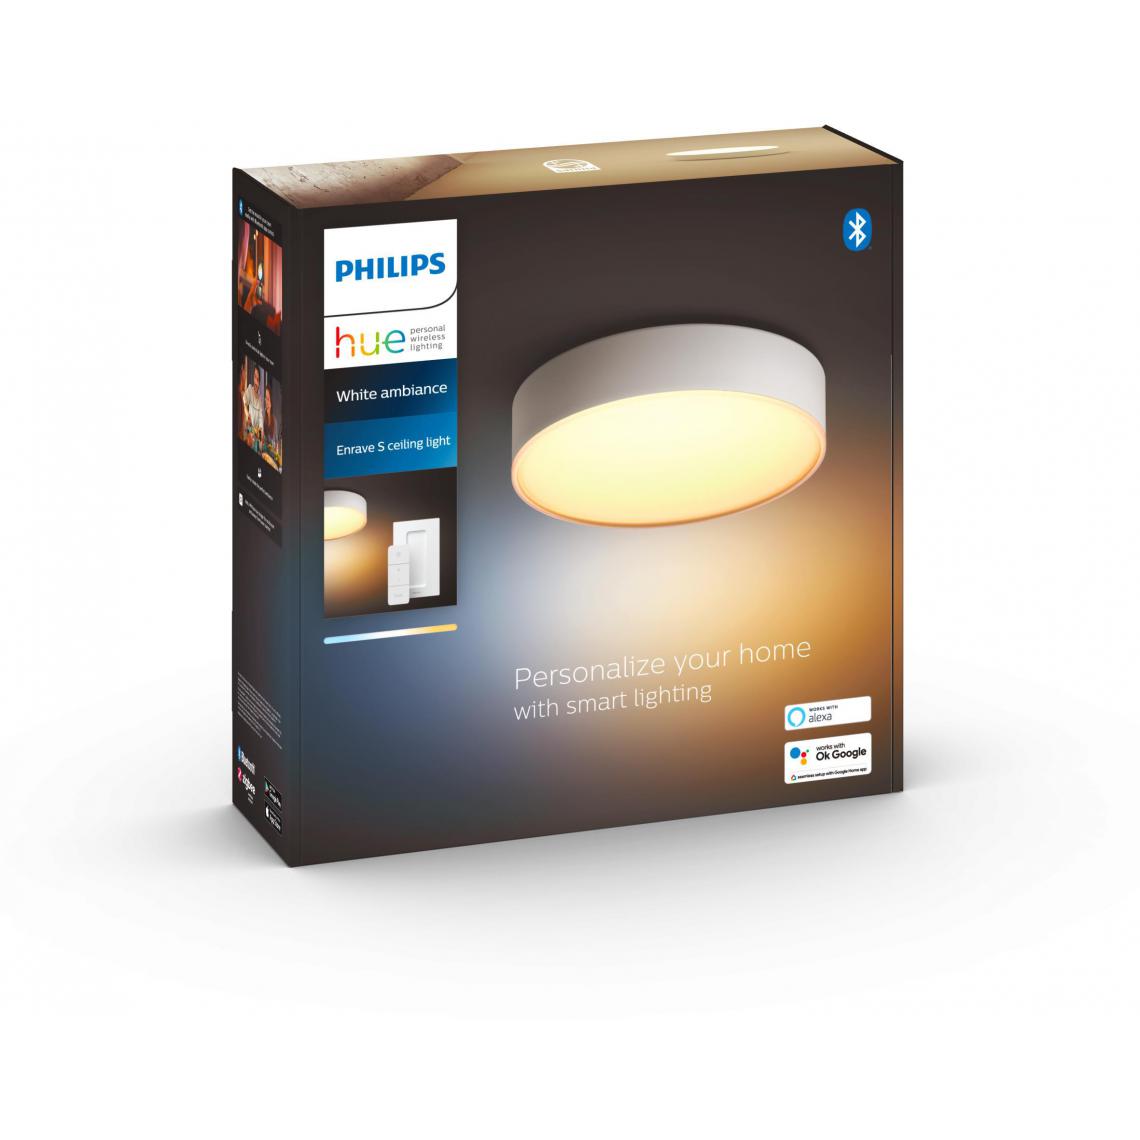 Philips Hue - Plafonnier Enrave S Hue - Blanc - Lampe connectée